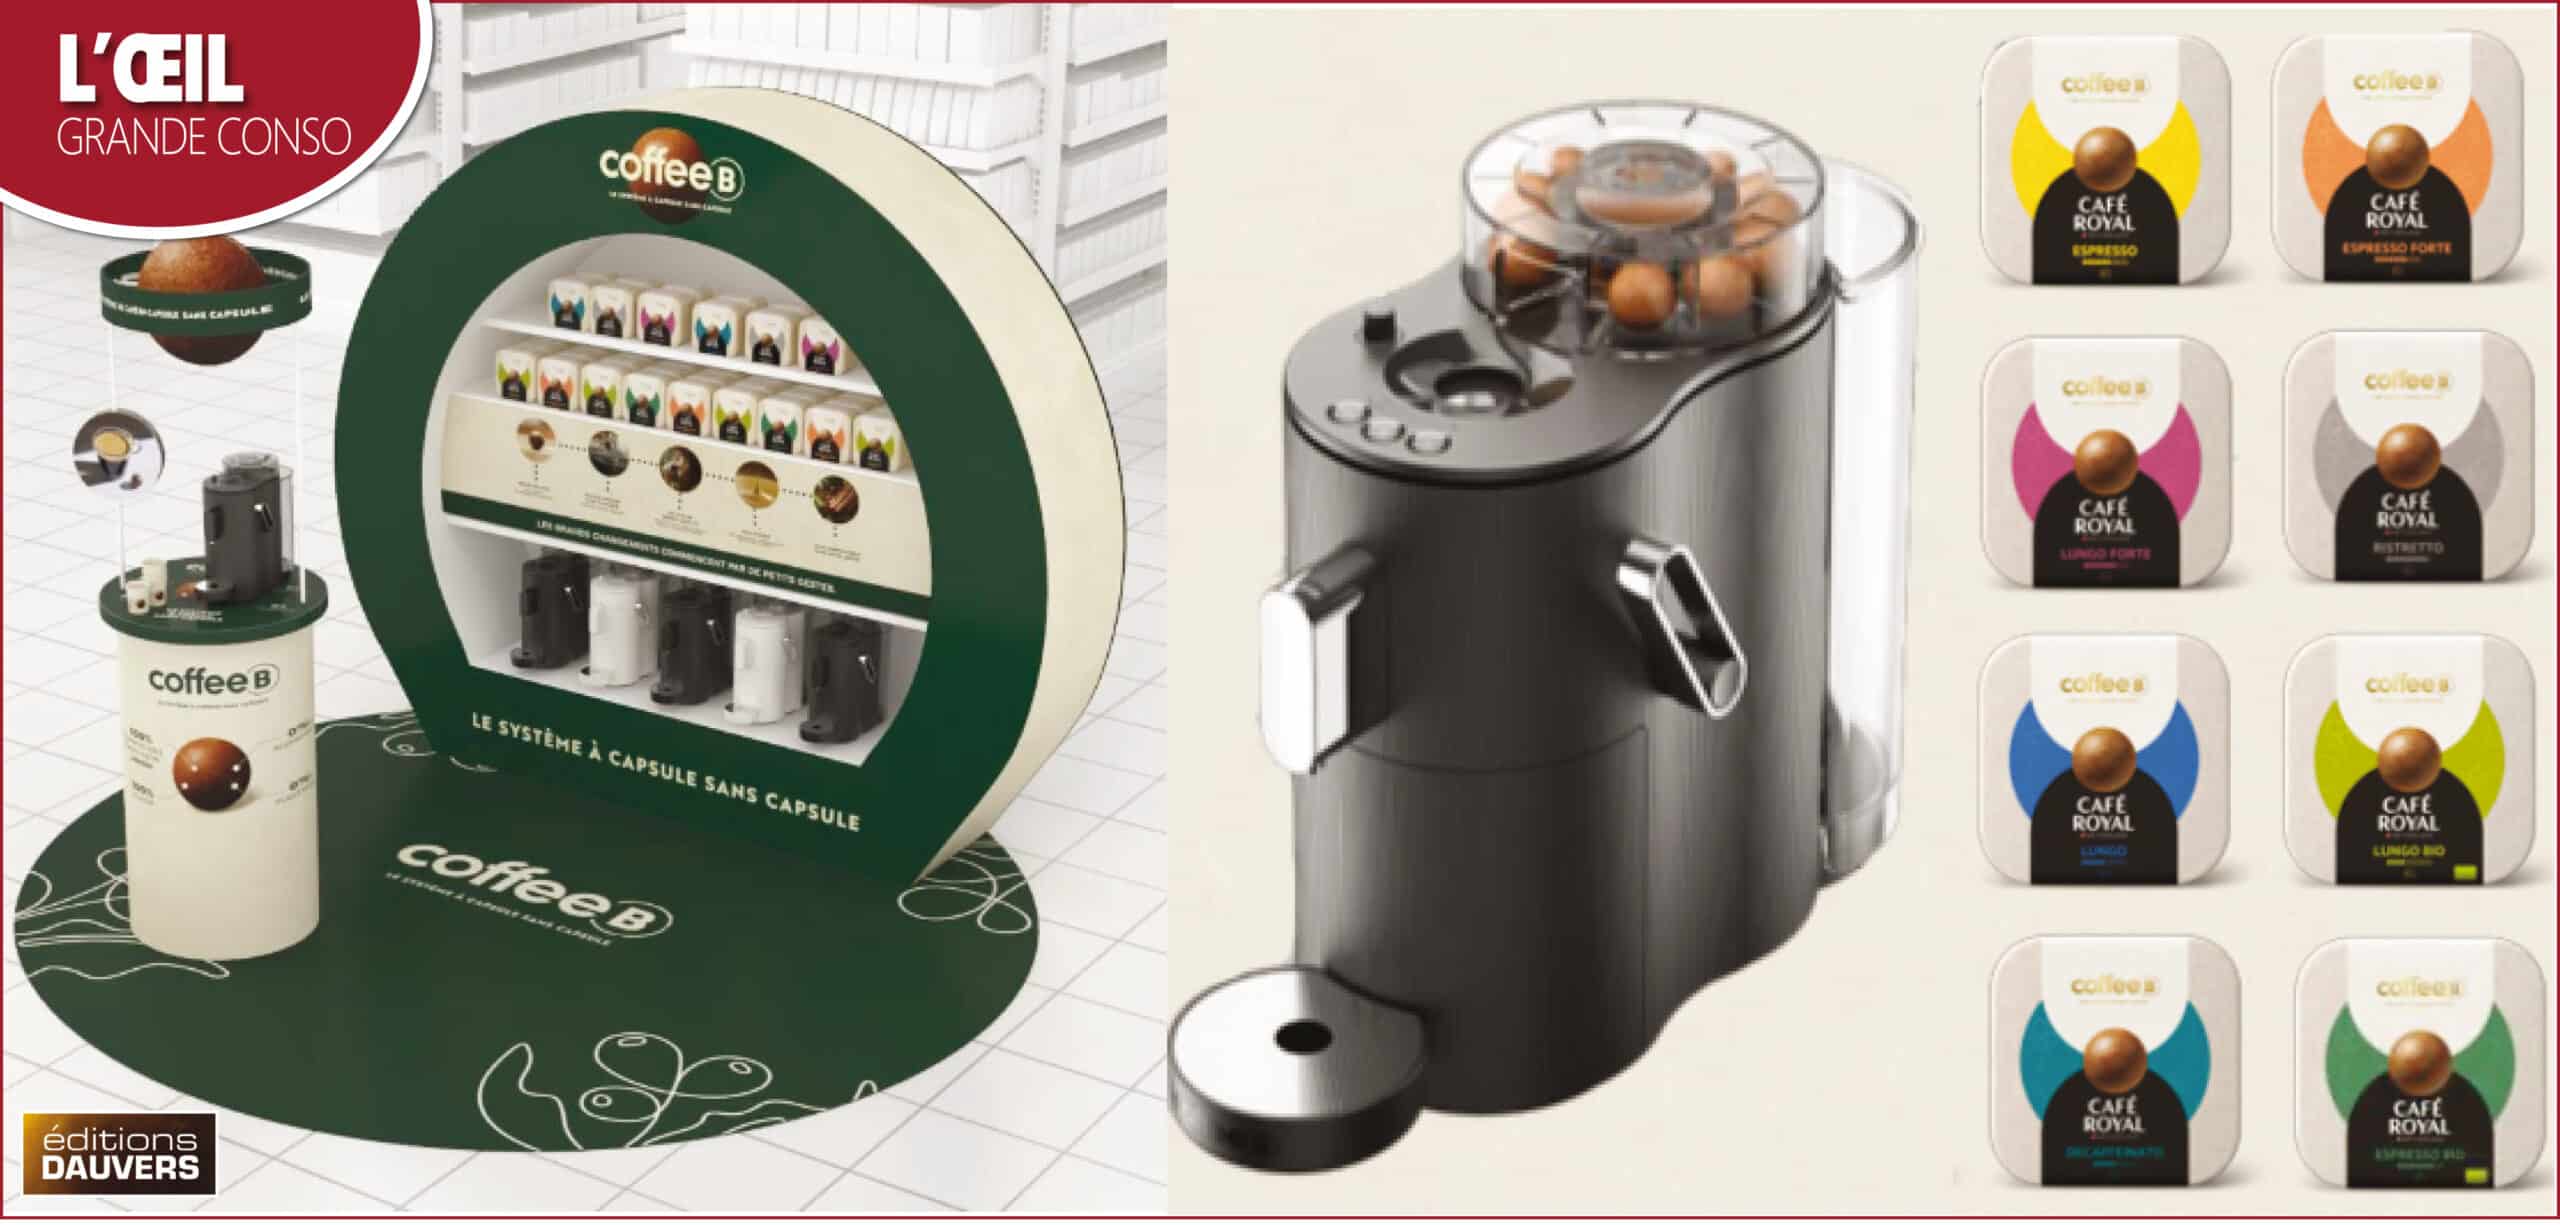 Machine coffee B : un système à capsule sans capsule - Marie Claire